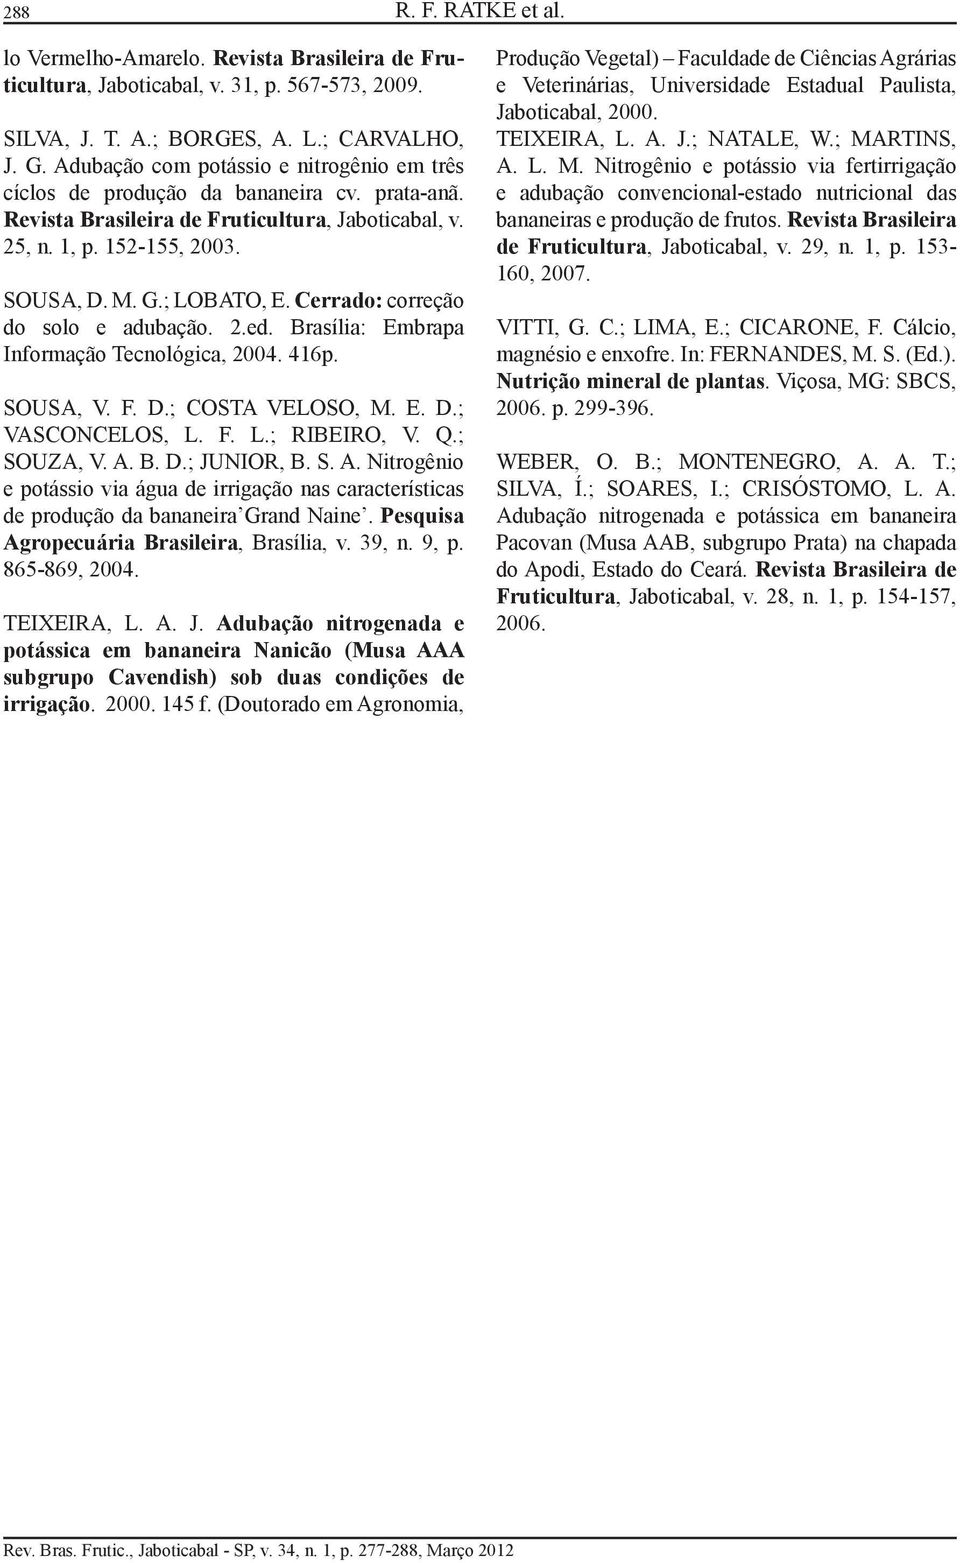 Cerrado: correção do solo e adubação. 2.ed. Brasília: Embrapa Informação Tecnológica, 2004. 416p. SOUSA, V. F. D.; COSTA VELOSO, M. E. D.; VASCONCELOS, L. F. L.; RIBEIRO, V. Q.; SOUZA, V. A. B. D.; JUNIOR, B.